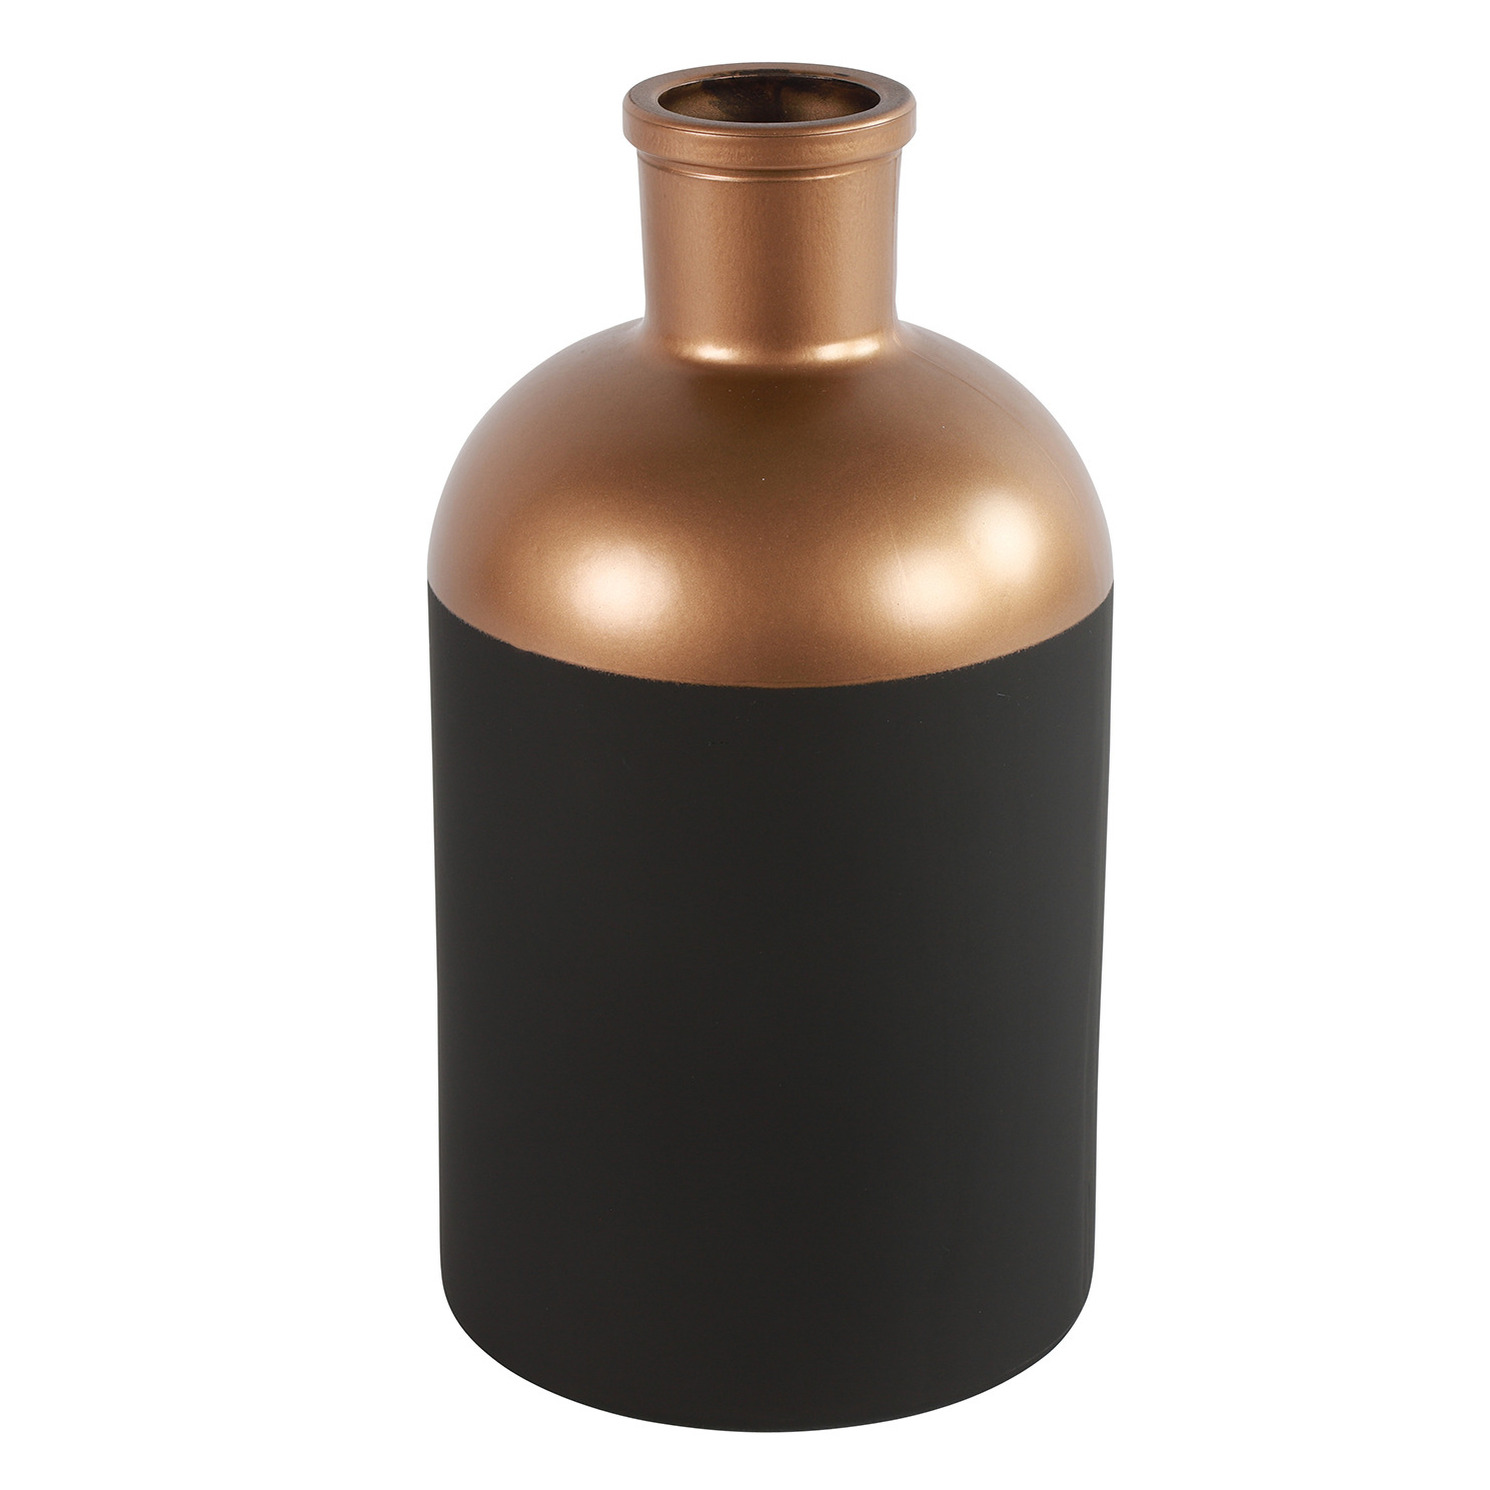 Countryfield Bloemen of deco vaas zwart-koper glas luxe fles vorm D14 x H26 cm